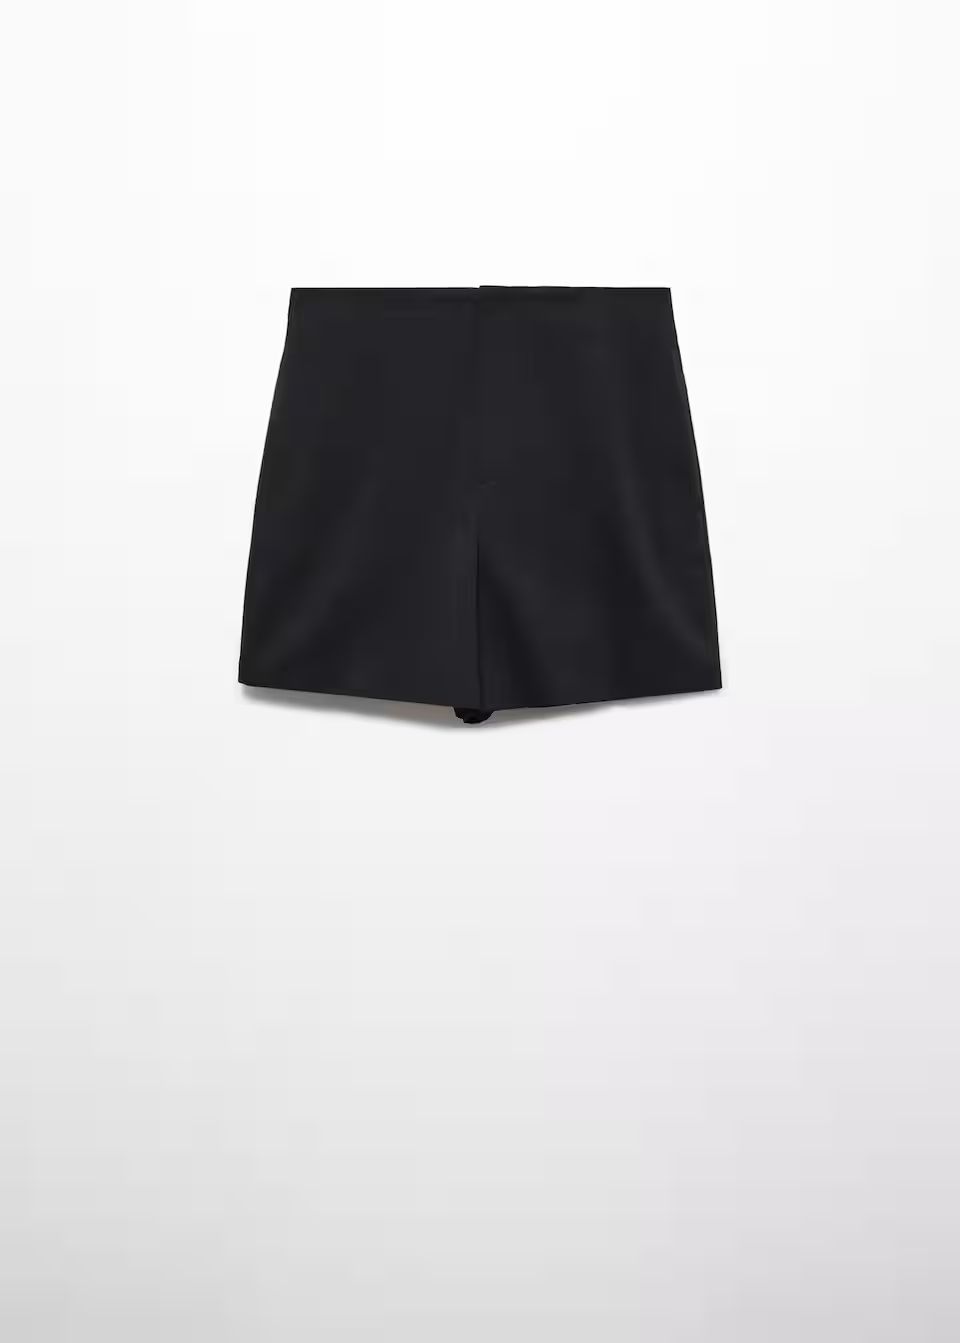 Search: High waist shorts black (12) | Mango United Kingdom | MANGO (UK)